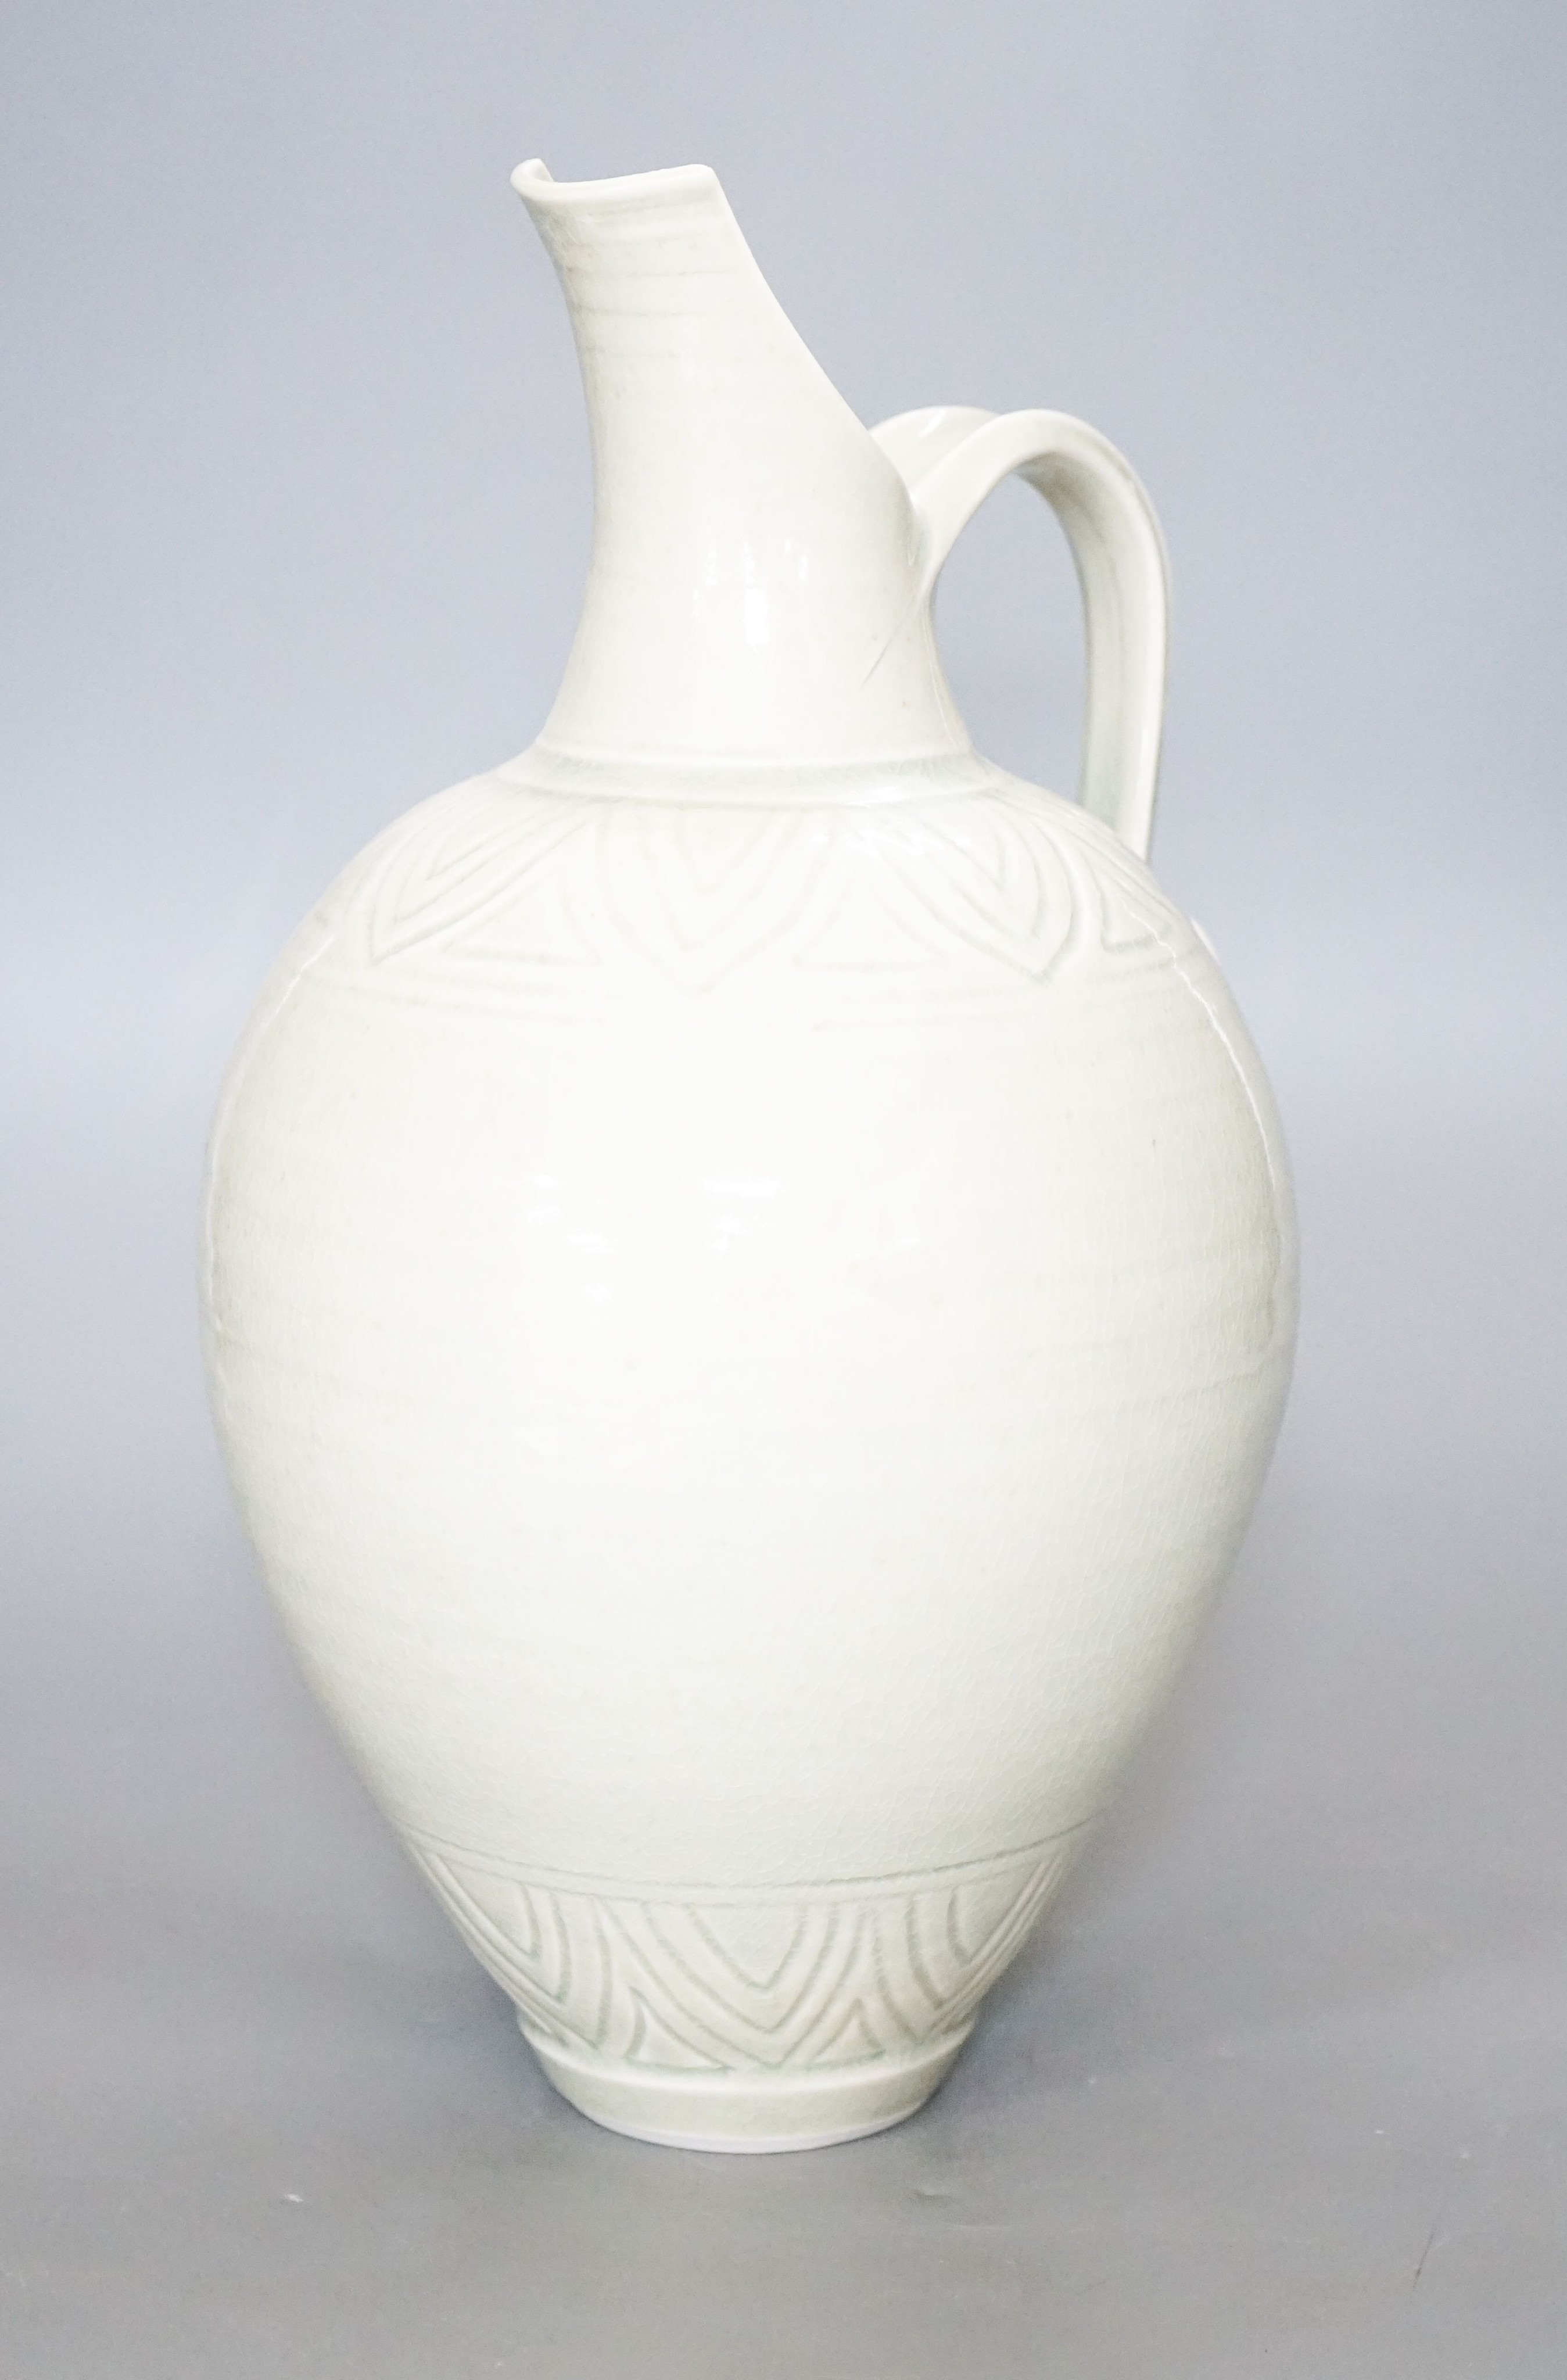 Bridget Drakeford (b.1946), a celadon glazed porcelain jug30cm - Image 2 of 2